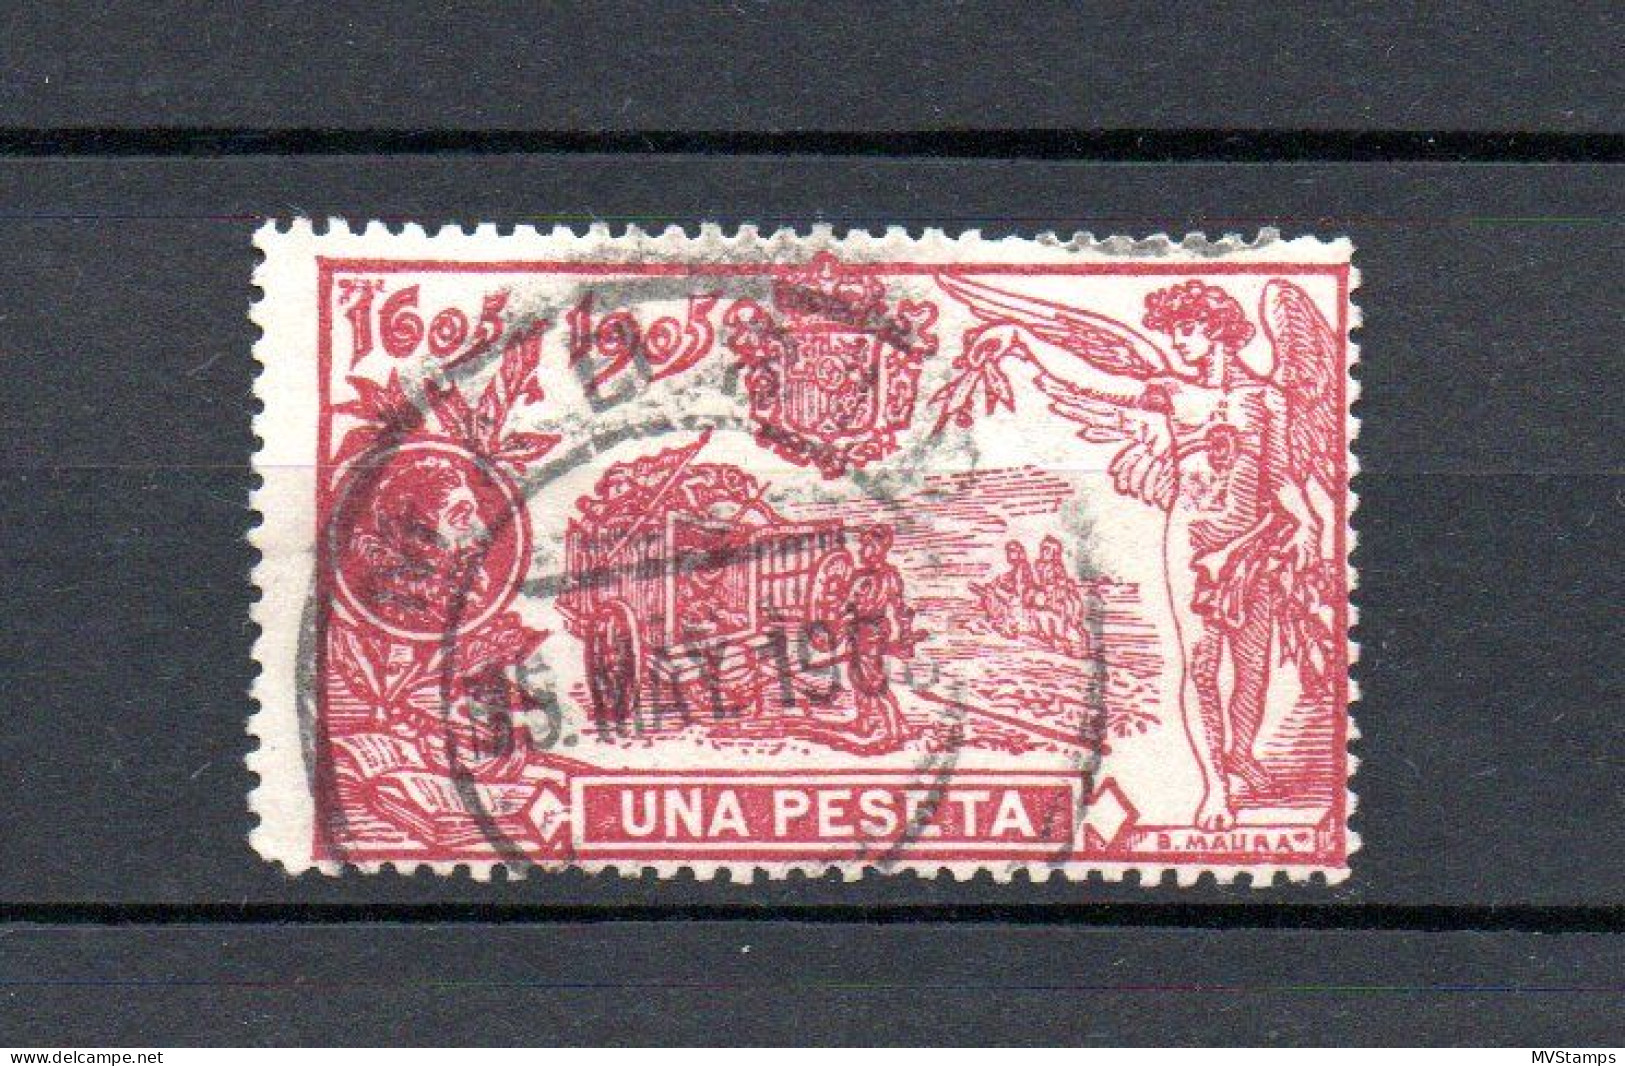 Spain 1905 Old 1 Peseta Don Quijote Stamps (Michel 227) Nice Used - Gebruikt